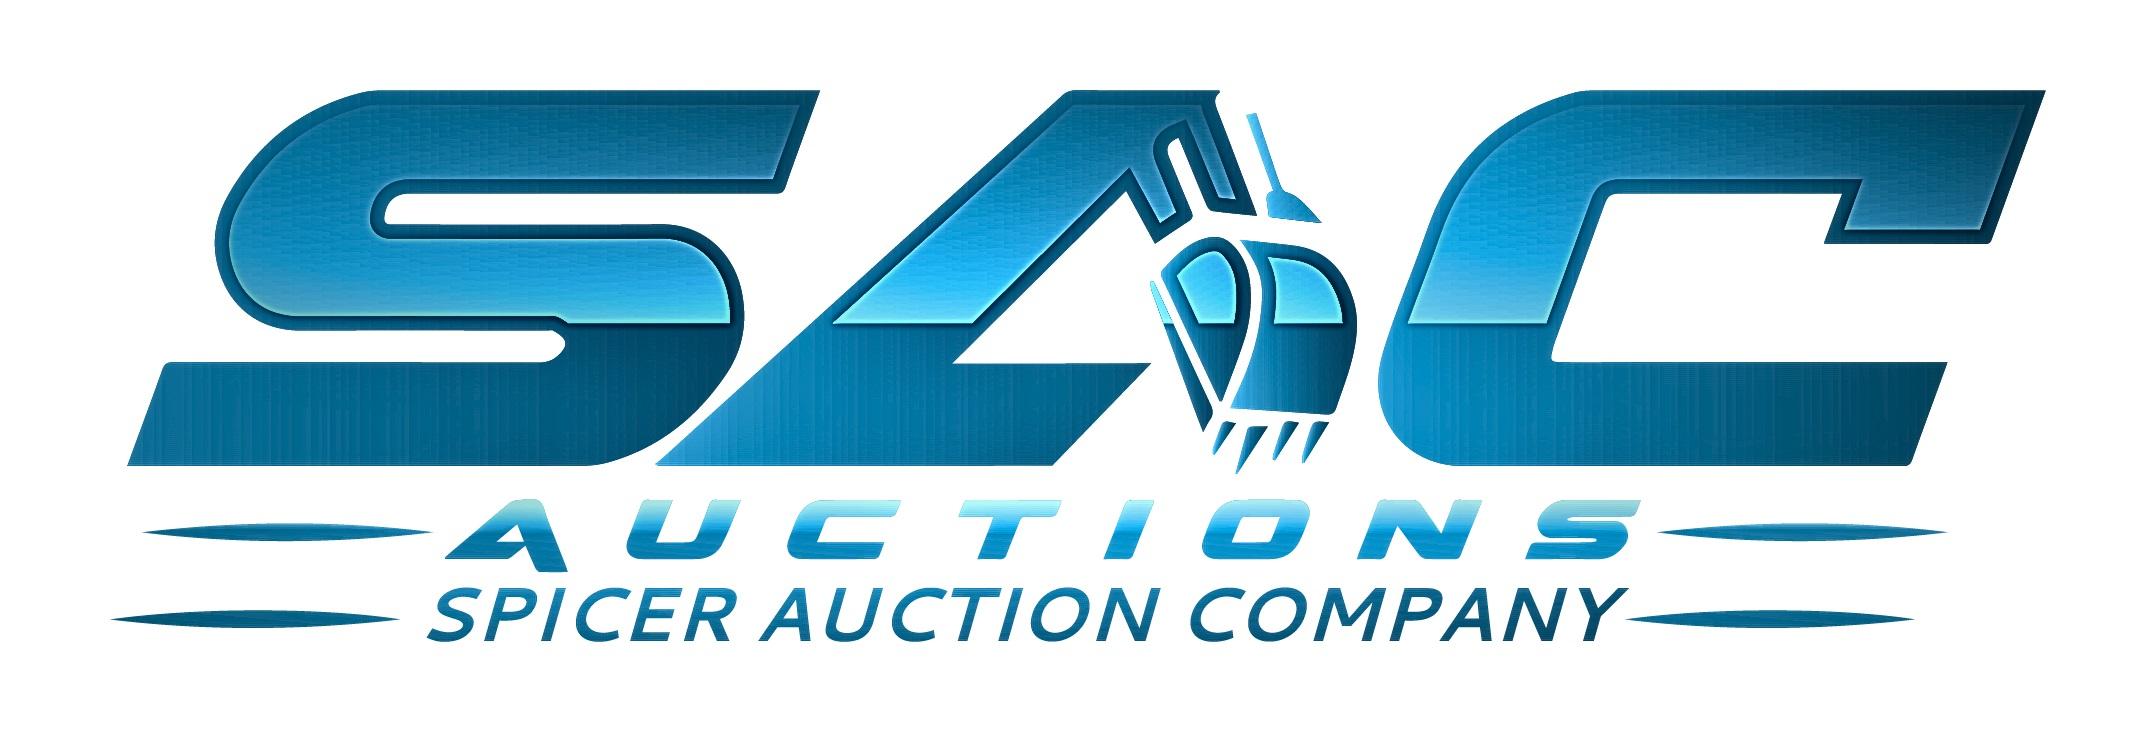 SAC Auctions LLC